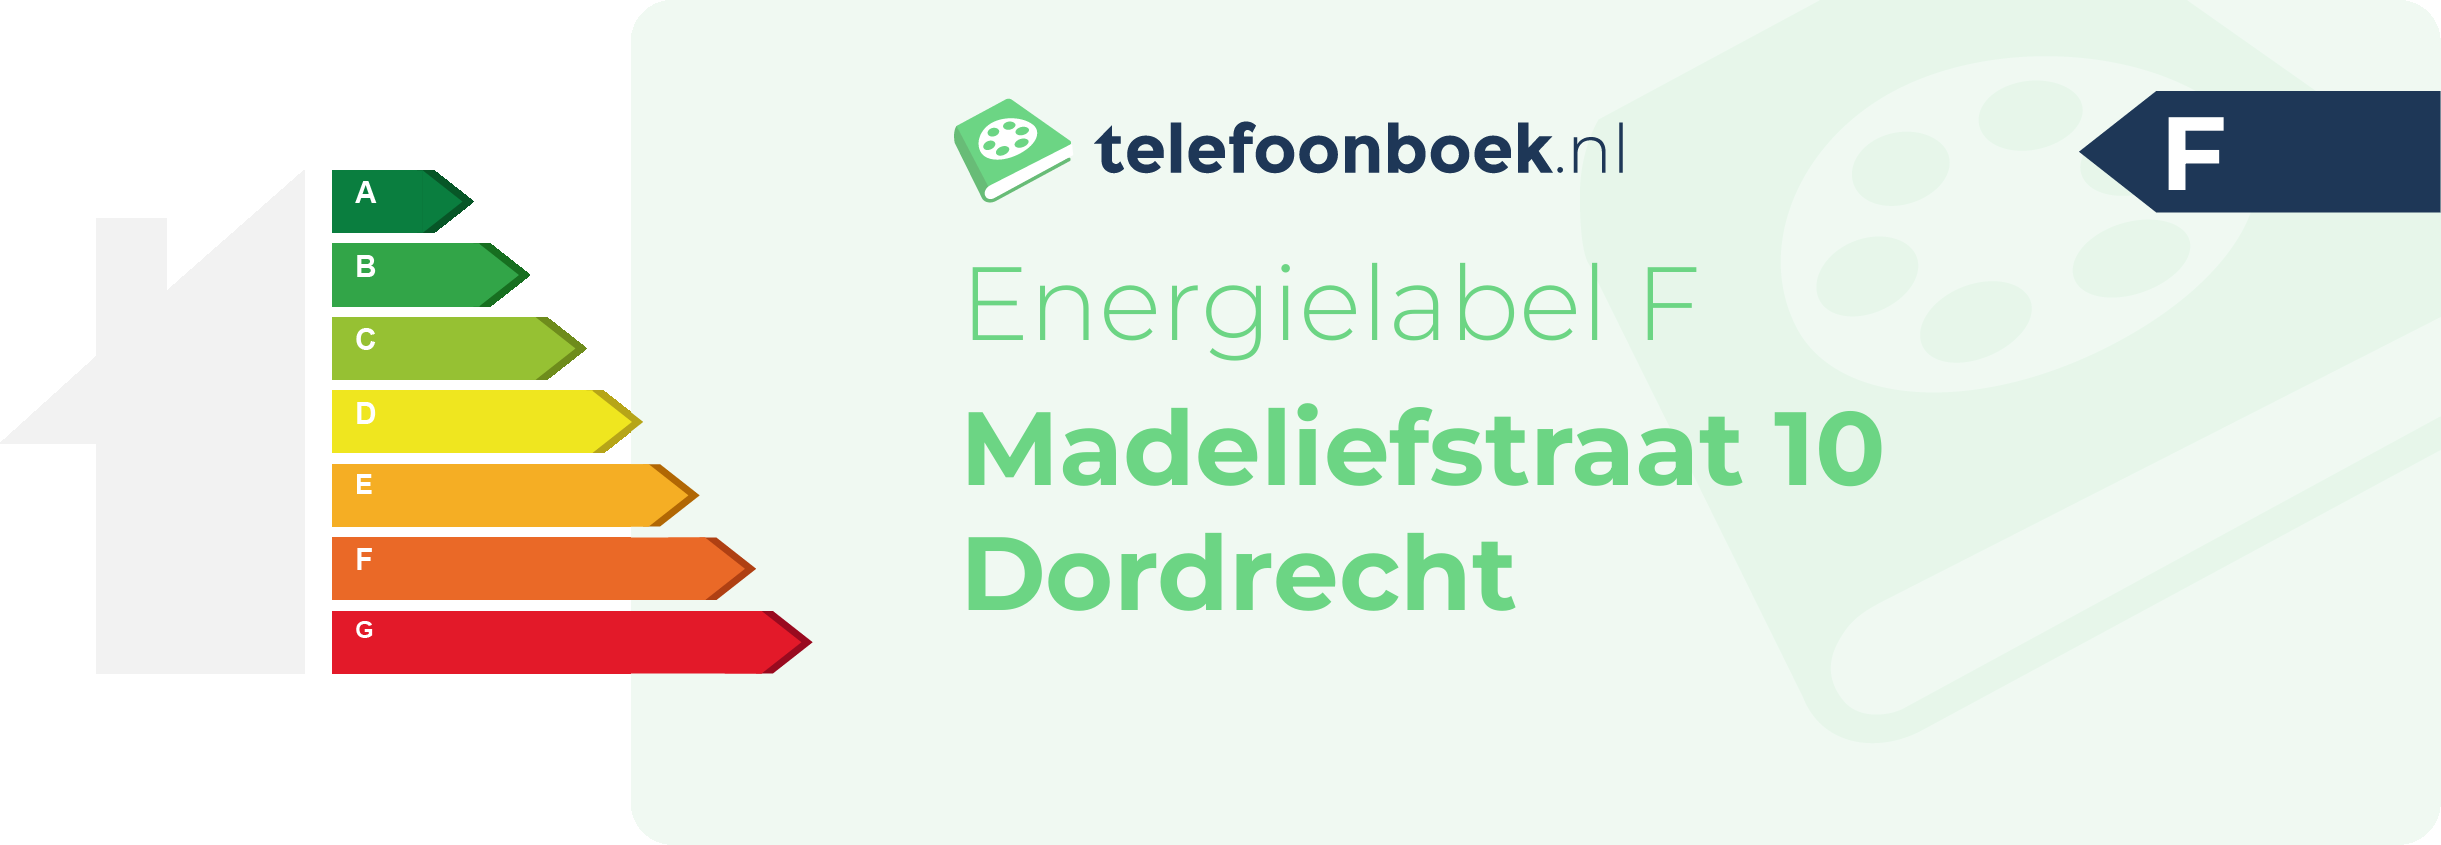 Energielabel Madeliefstraat 10 Dordrecht